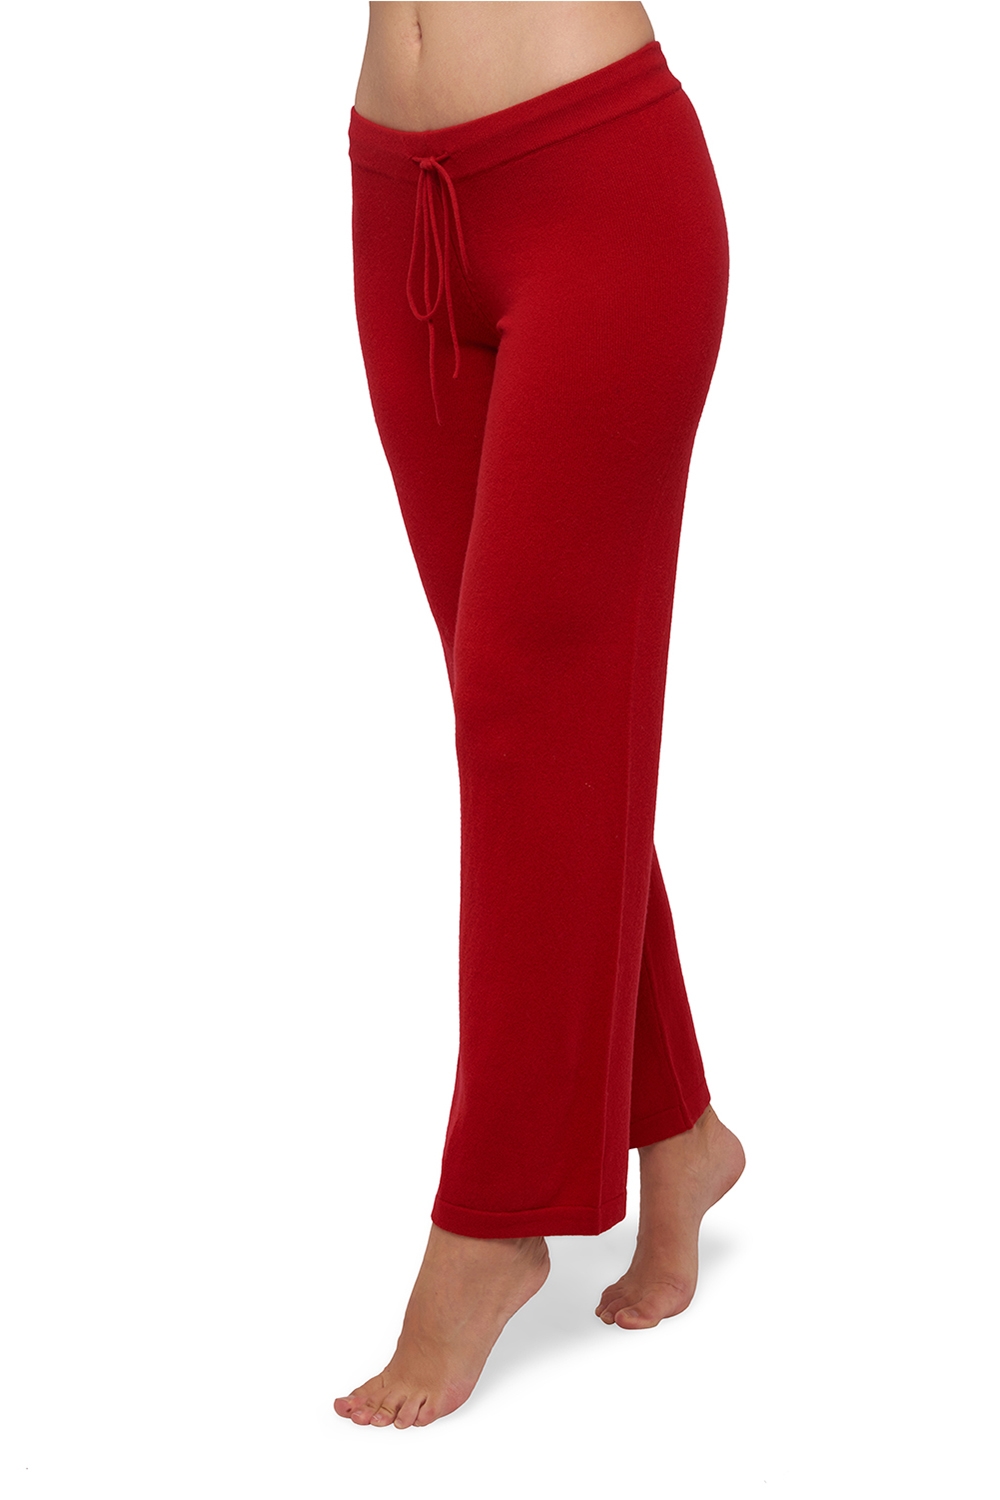 Cashmere cashmere donna pantaloni leggings malice rosso rubino 3xl